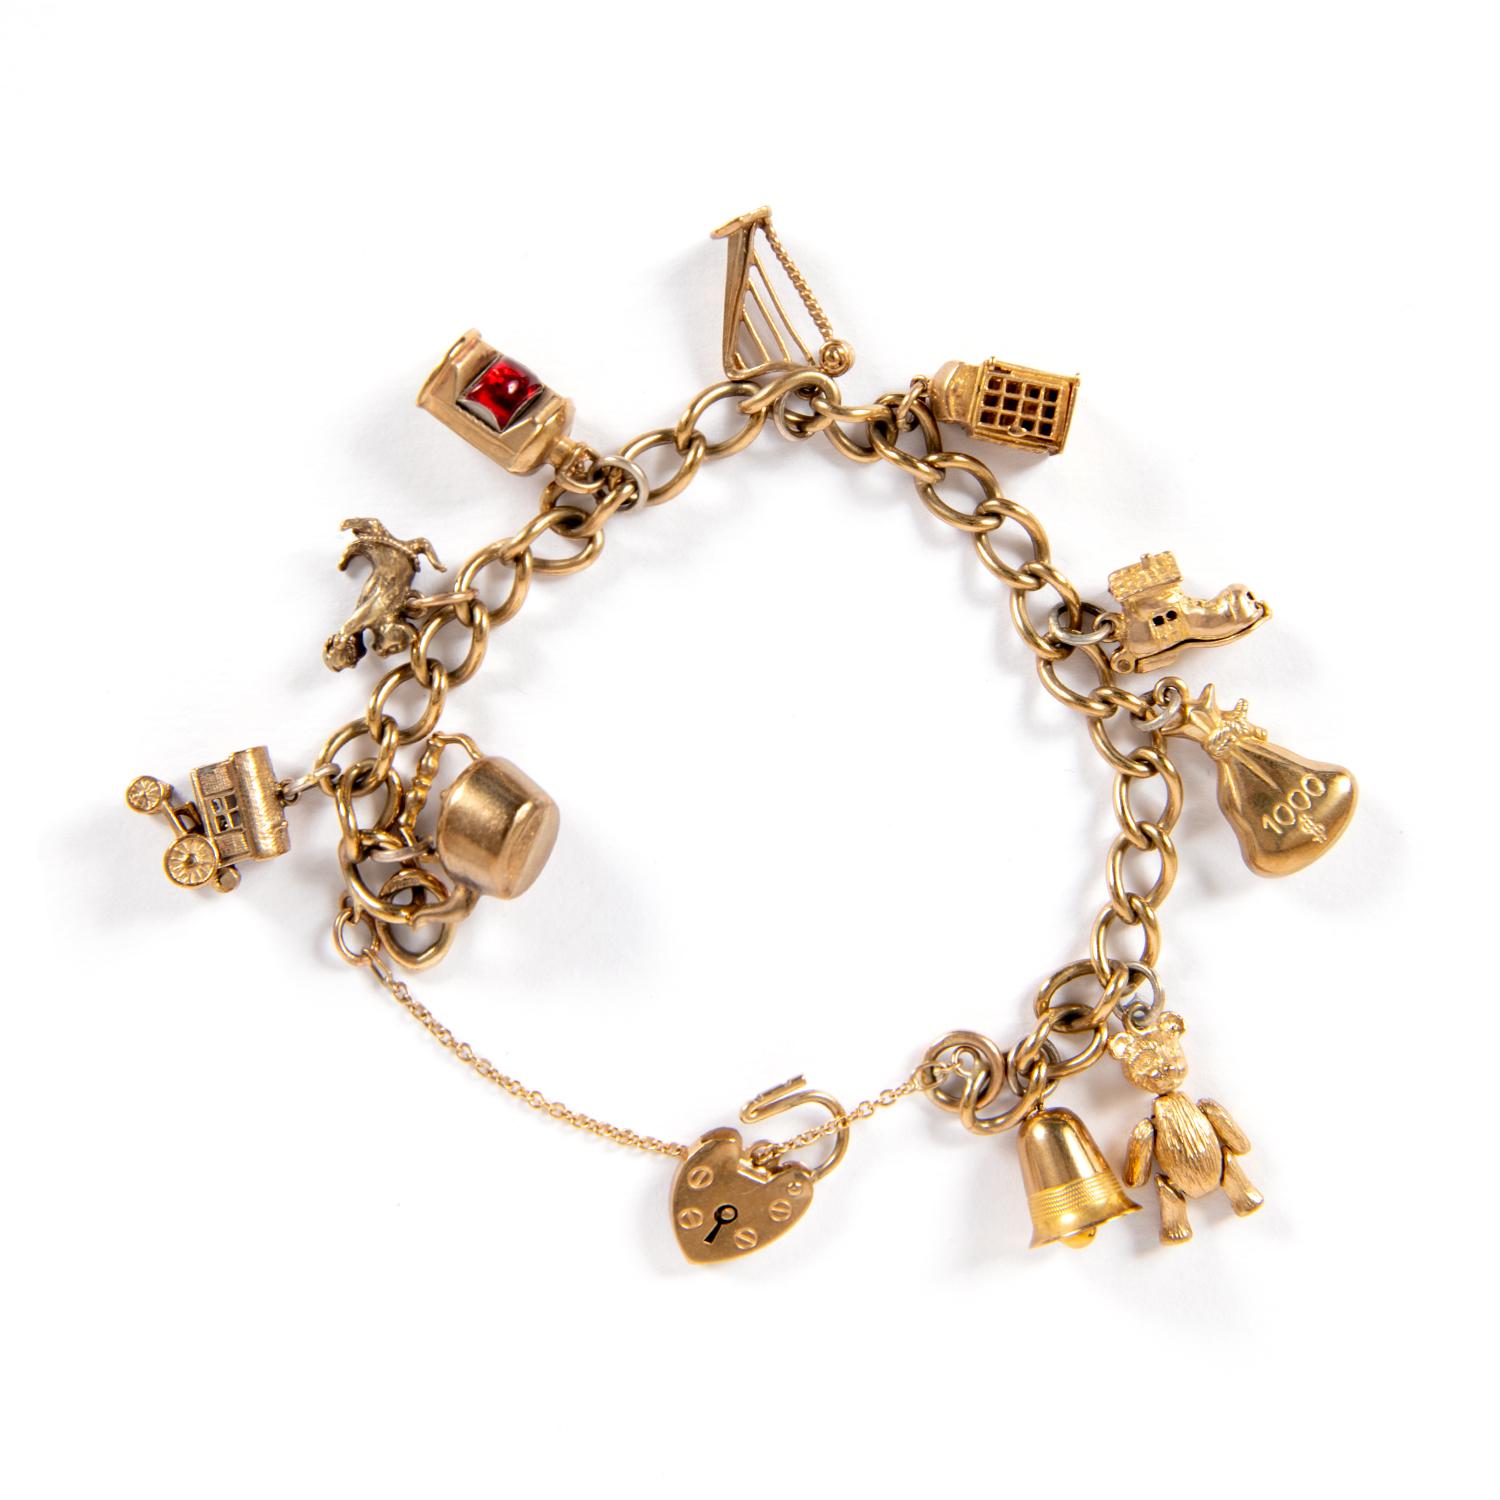 Sehr schöne Vintage 9 Karat Gold Charms Armband England Mitte 900'
Das Armband besteht aus 10 klassischen Anhängern mit verschiedenen Formen des gemeinsamen Lebens und ikonischen britischen, Glücksbringer, ist perfekt für Tag und Nacht.
länge des